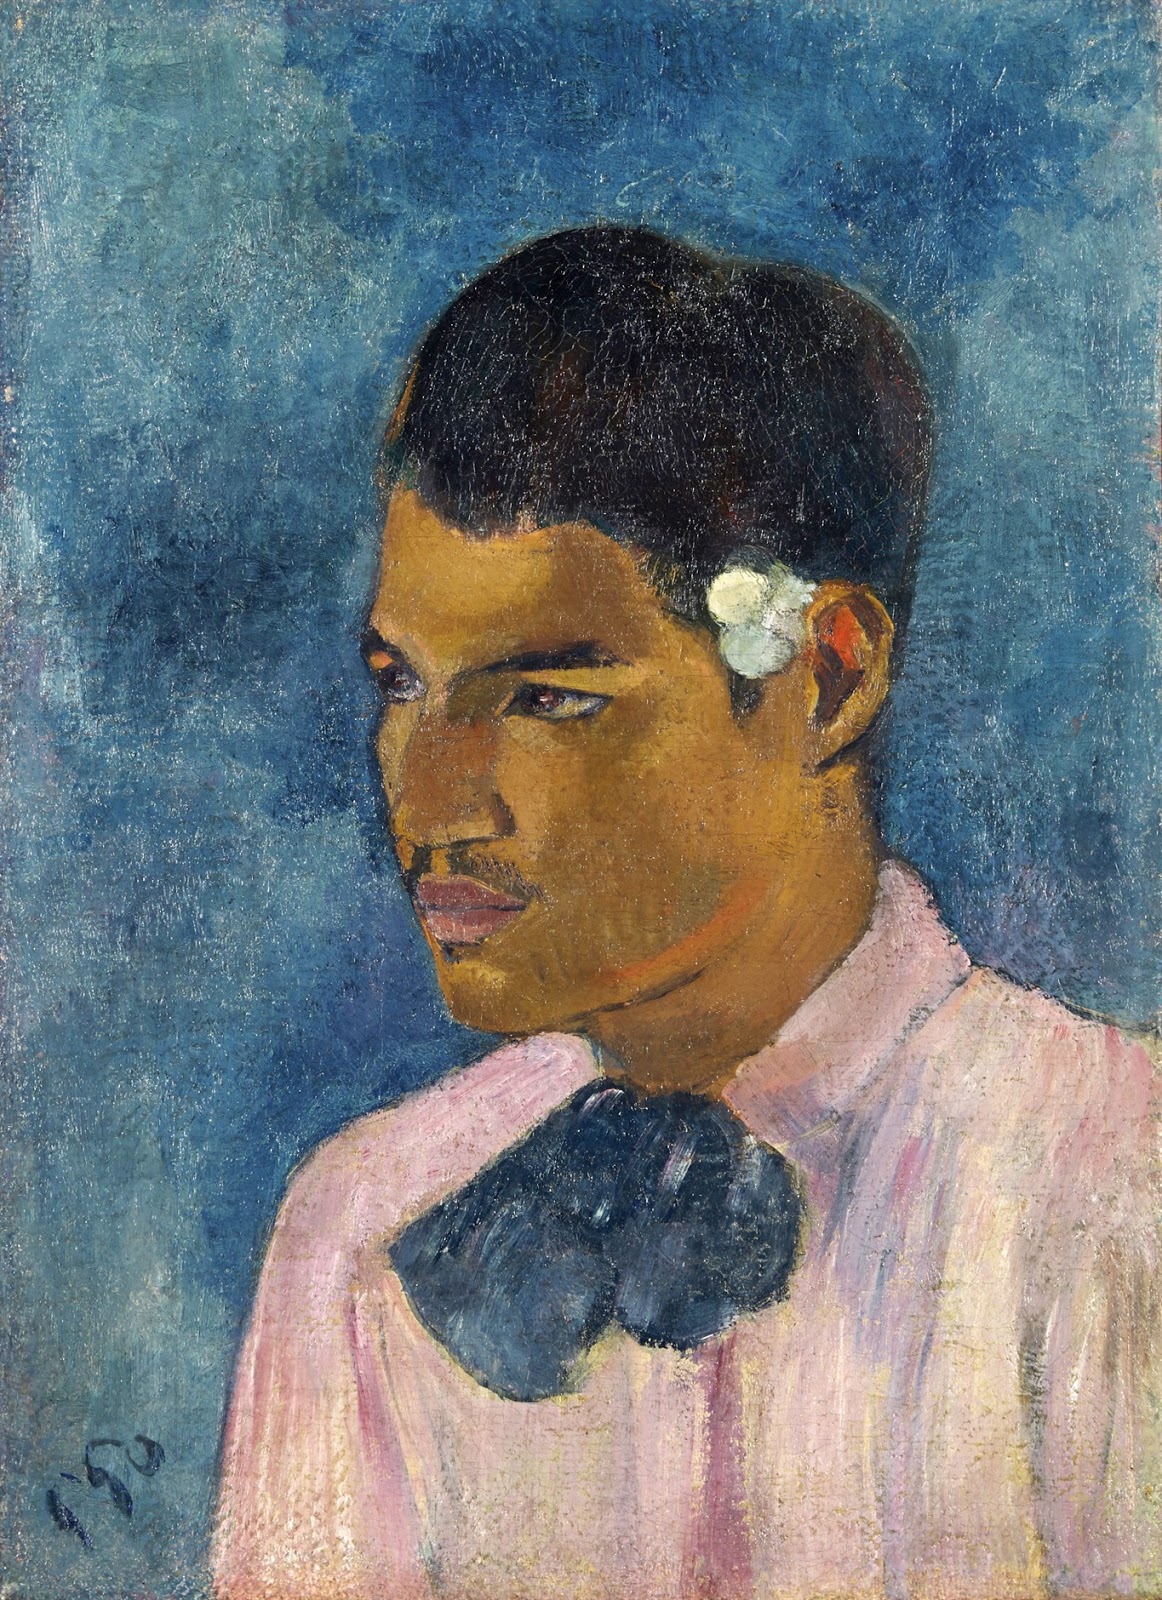 Paul+Gauguin-1848-1903 (505).jpg